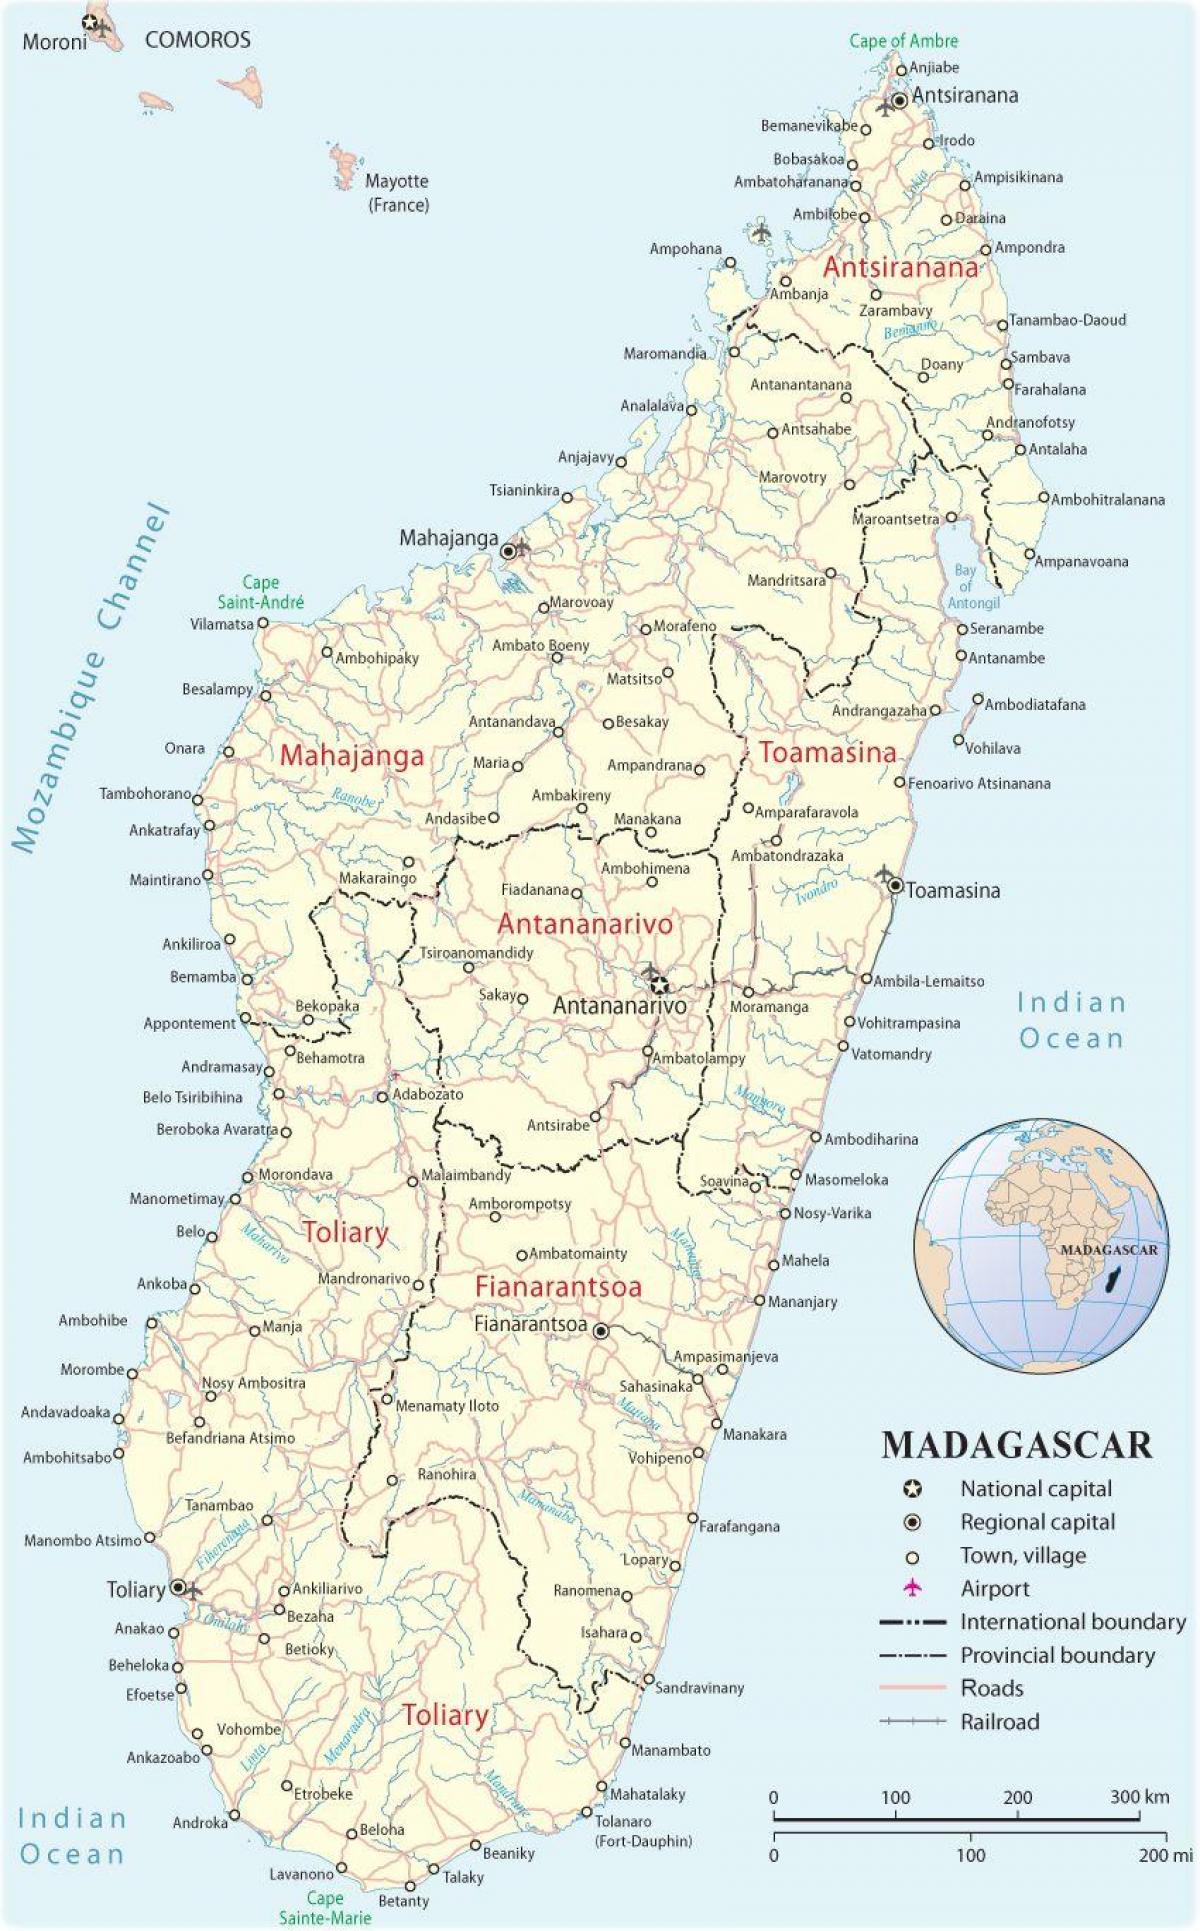 kort af Madagaskar flugvellir